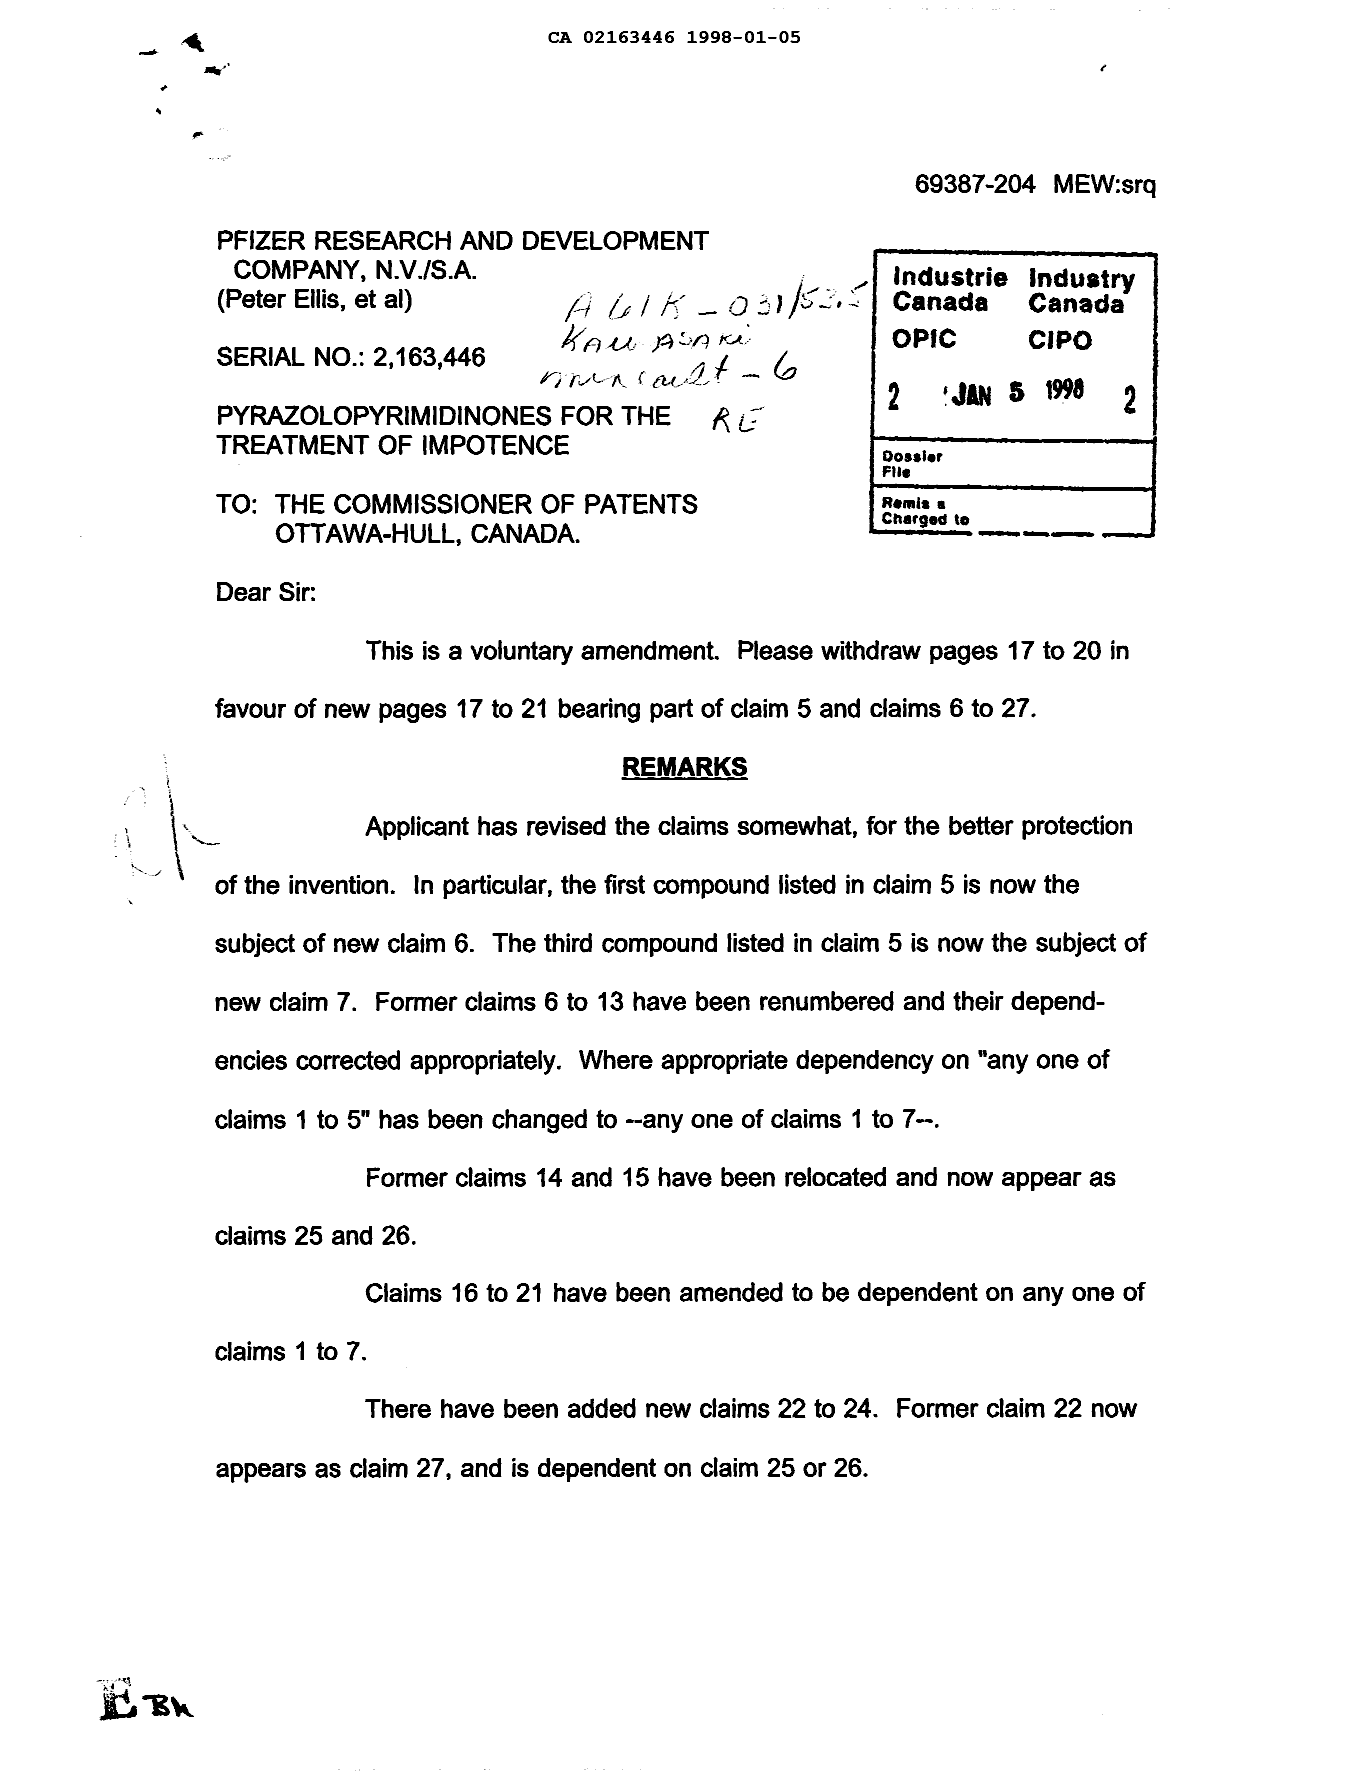 Document de brevet canadien 2163446. Poursuite-Amendment 19971205. Image 1 de 1